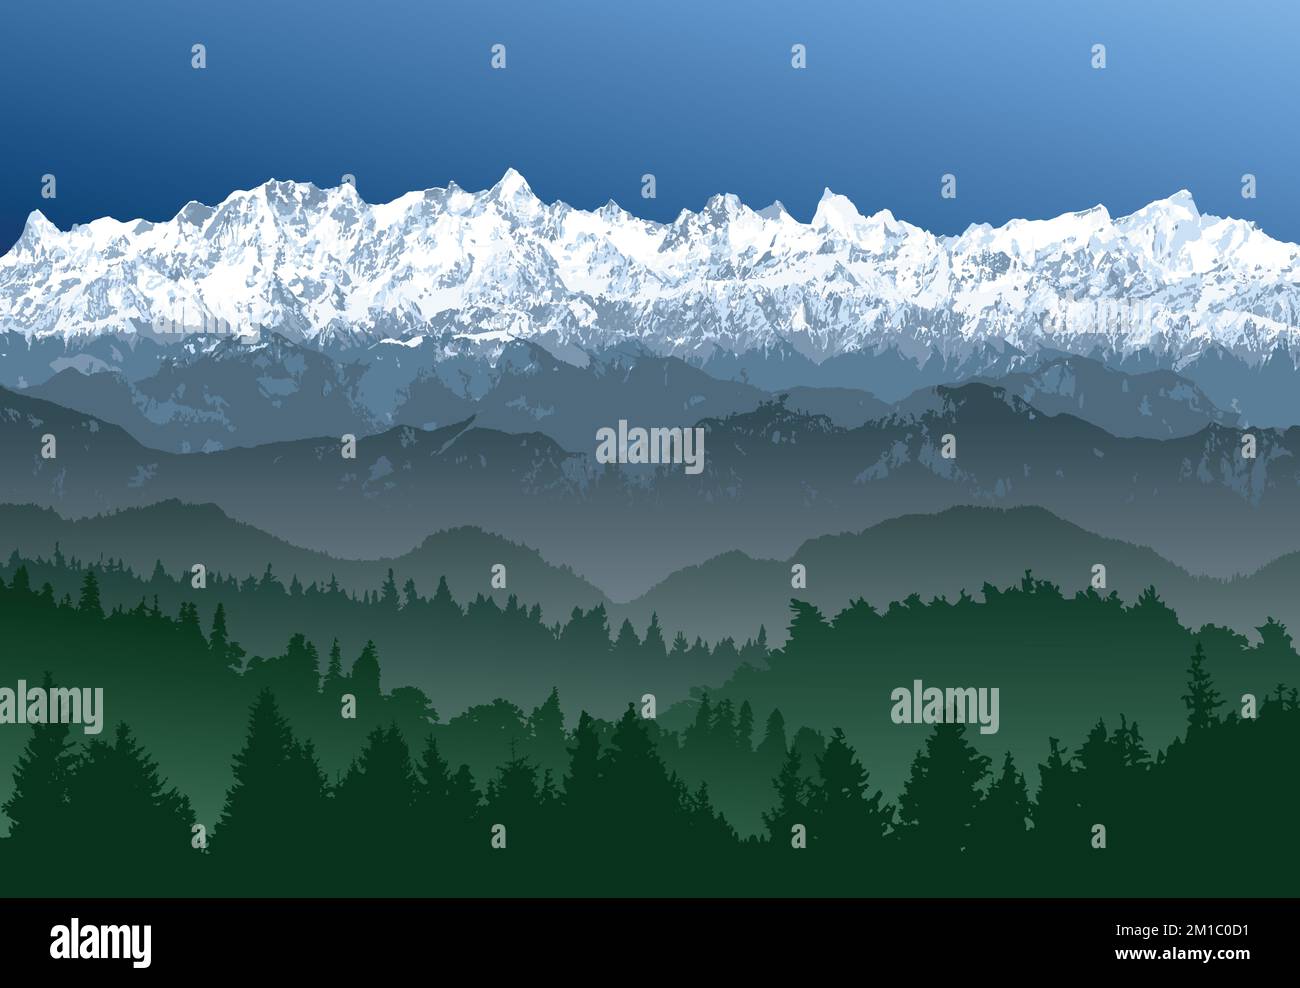 Grande chaîne de montagnes de l'Himalaya avec forêt, illustration vectorielle des montagnes de l'Himalaya, montagne enneigée de couleur blanche et bleue Illustration de Vecteur